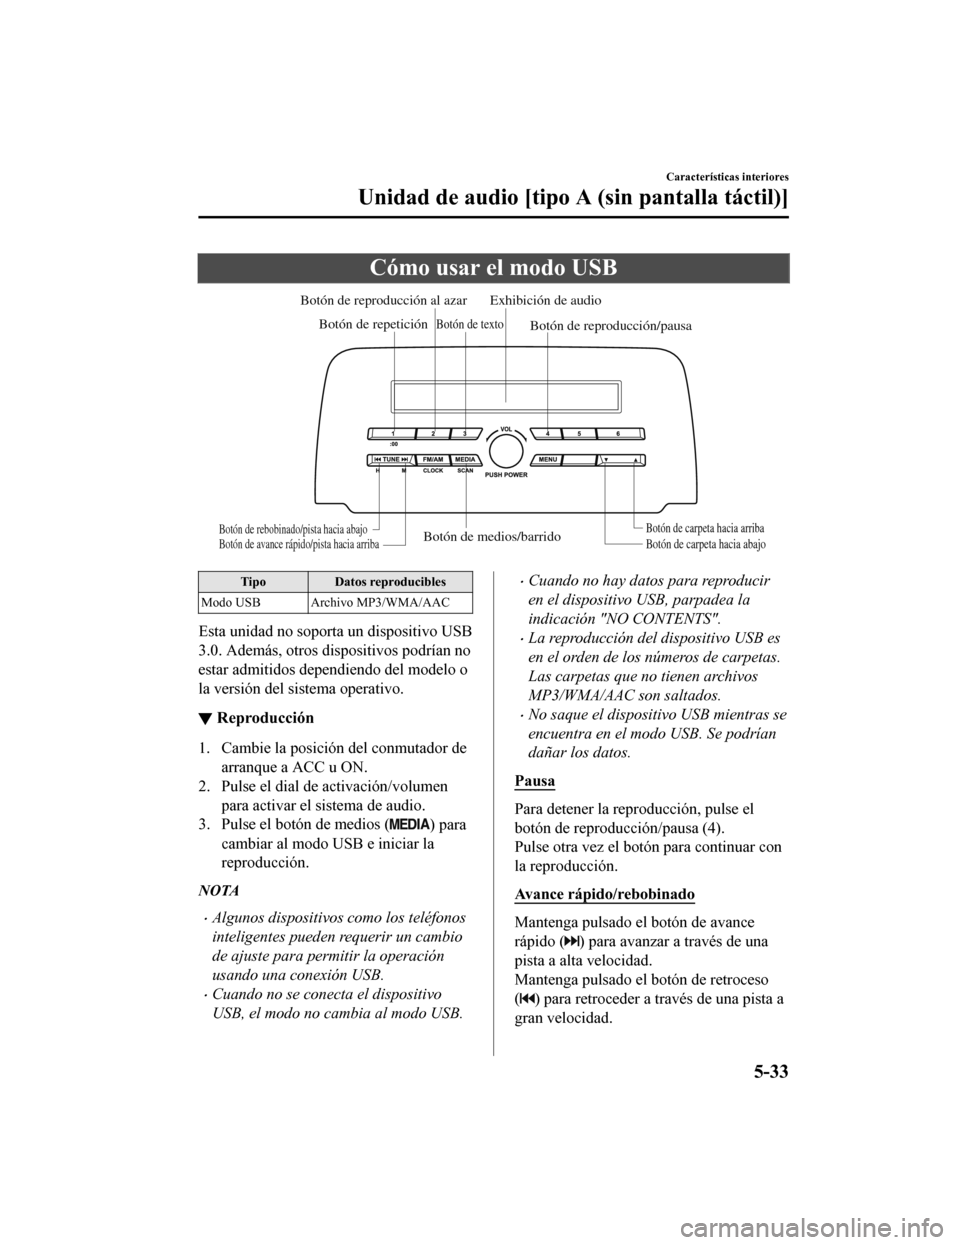 MAZDA MODEL CX-5 2019  Manual del propietario (in Spanish) Cómo usar el modo USB
Botón de medios/barridoBotón de carpeta hacia abajoBotón de carpeta hacia arriba
Botón de reproducción/pausa
Botón de reproducción al azar
Botón de repetición Exhibici�